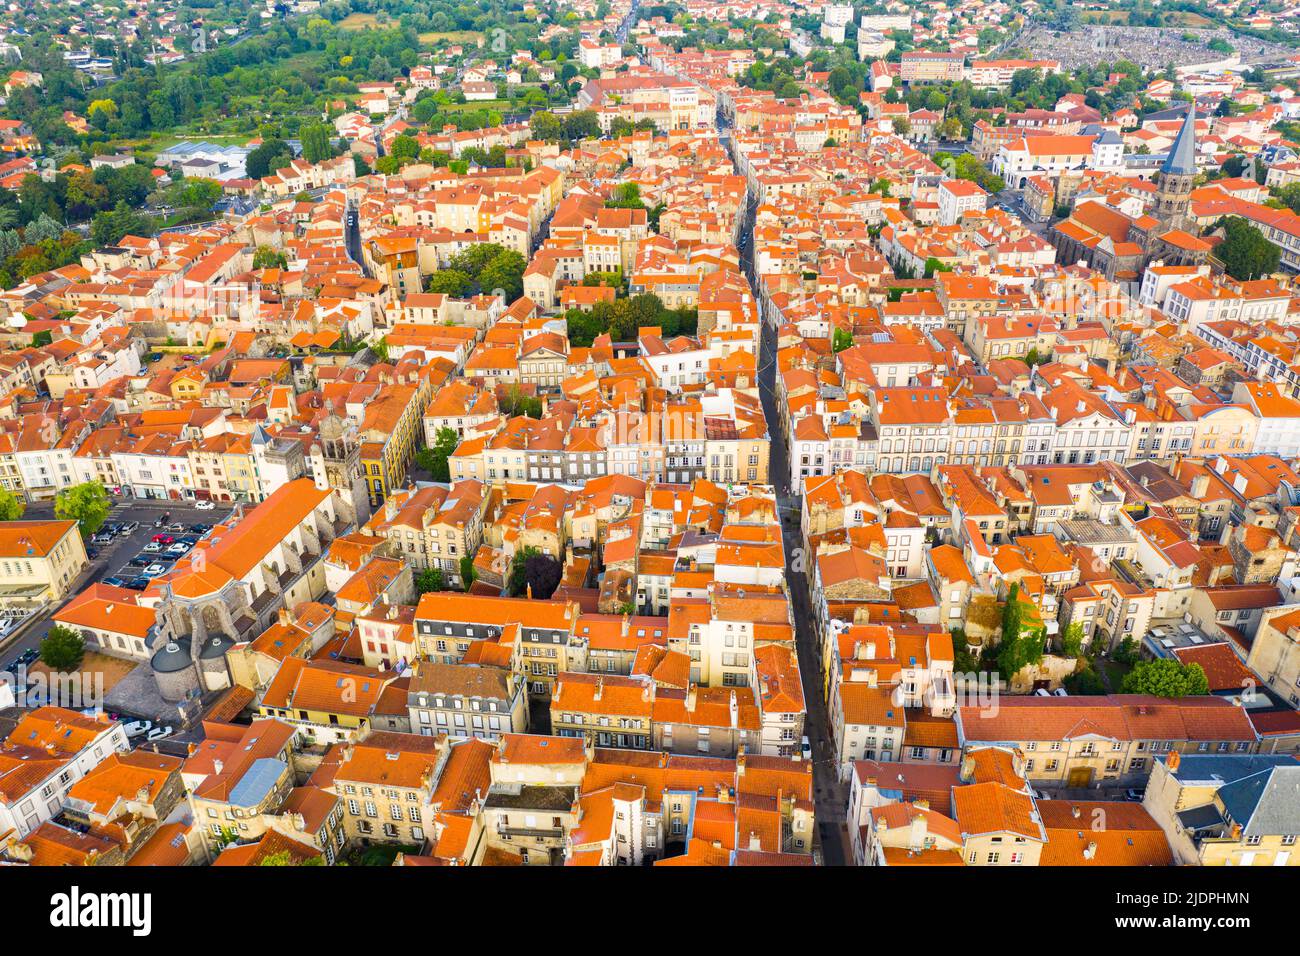 Vue aérienne du quartier résidentiel de Riom, Auvergne, France Banque D'Images